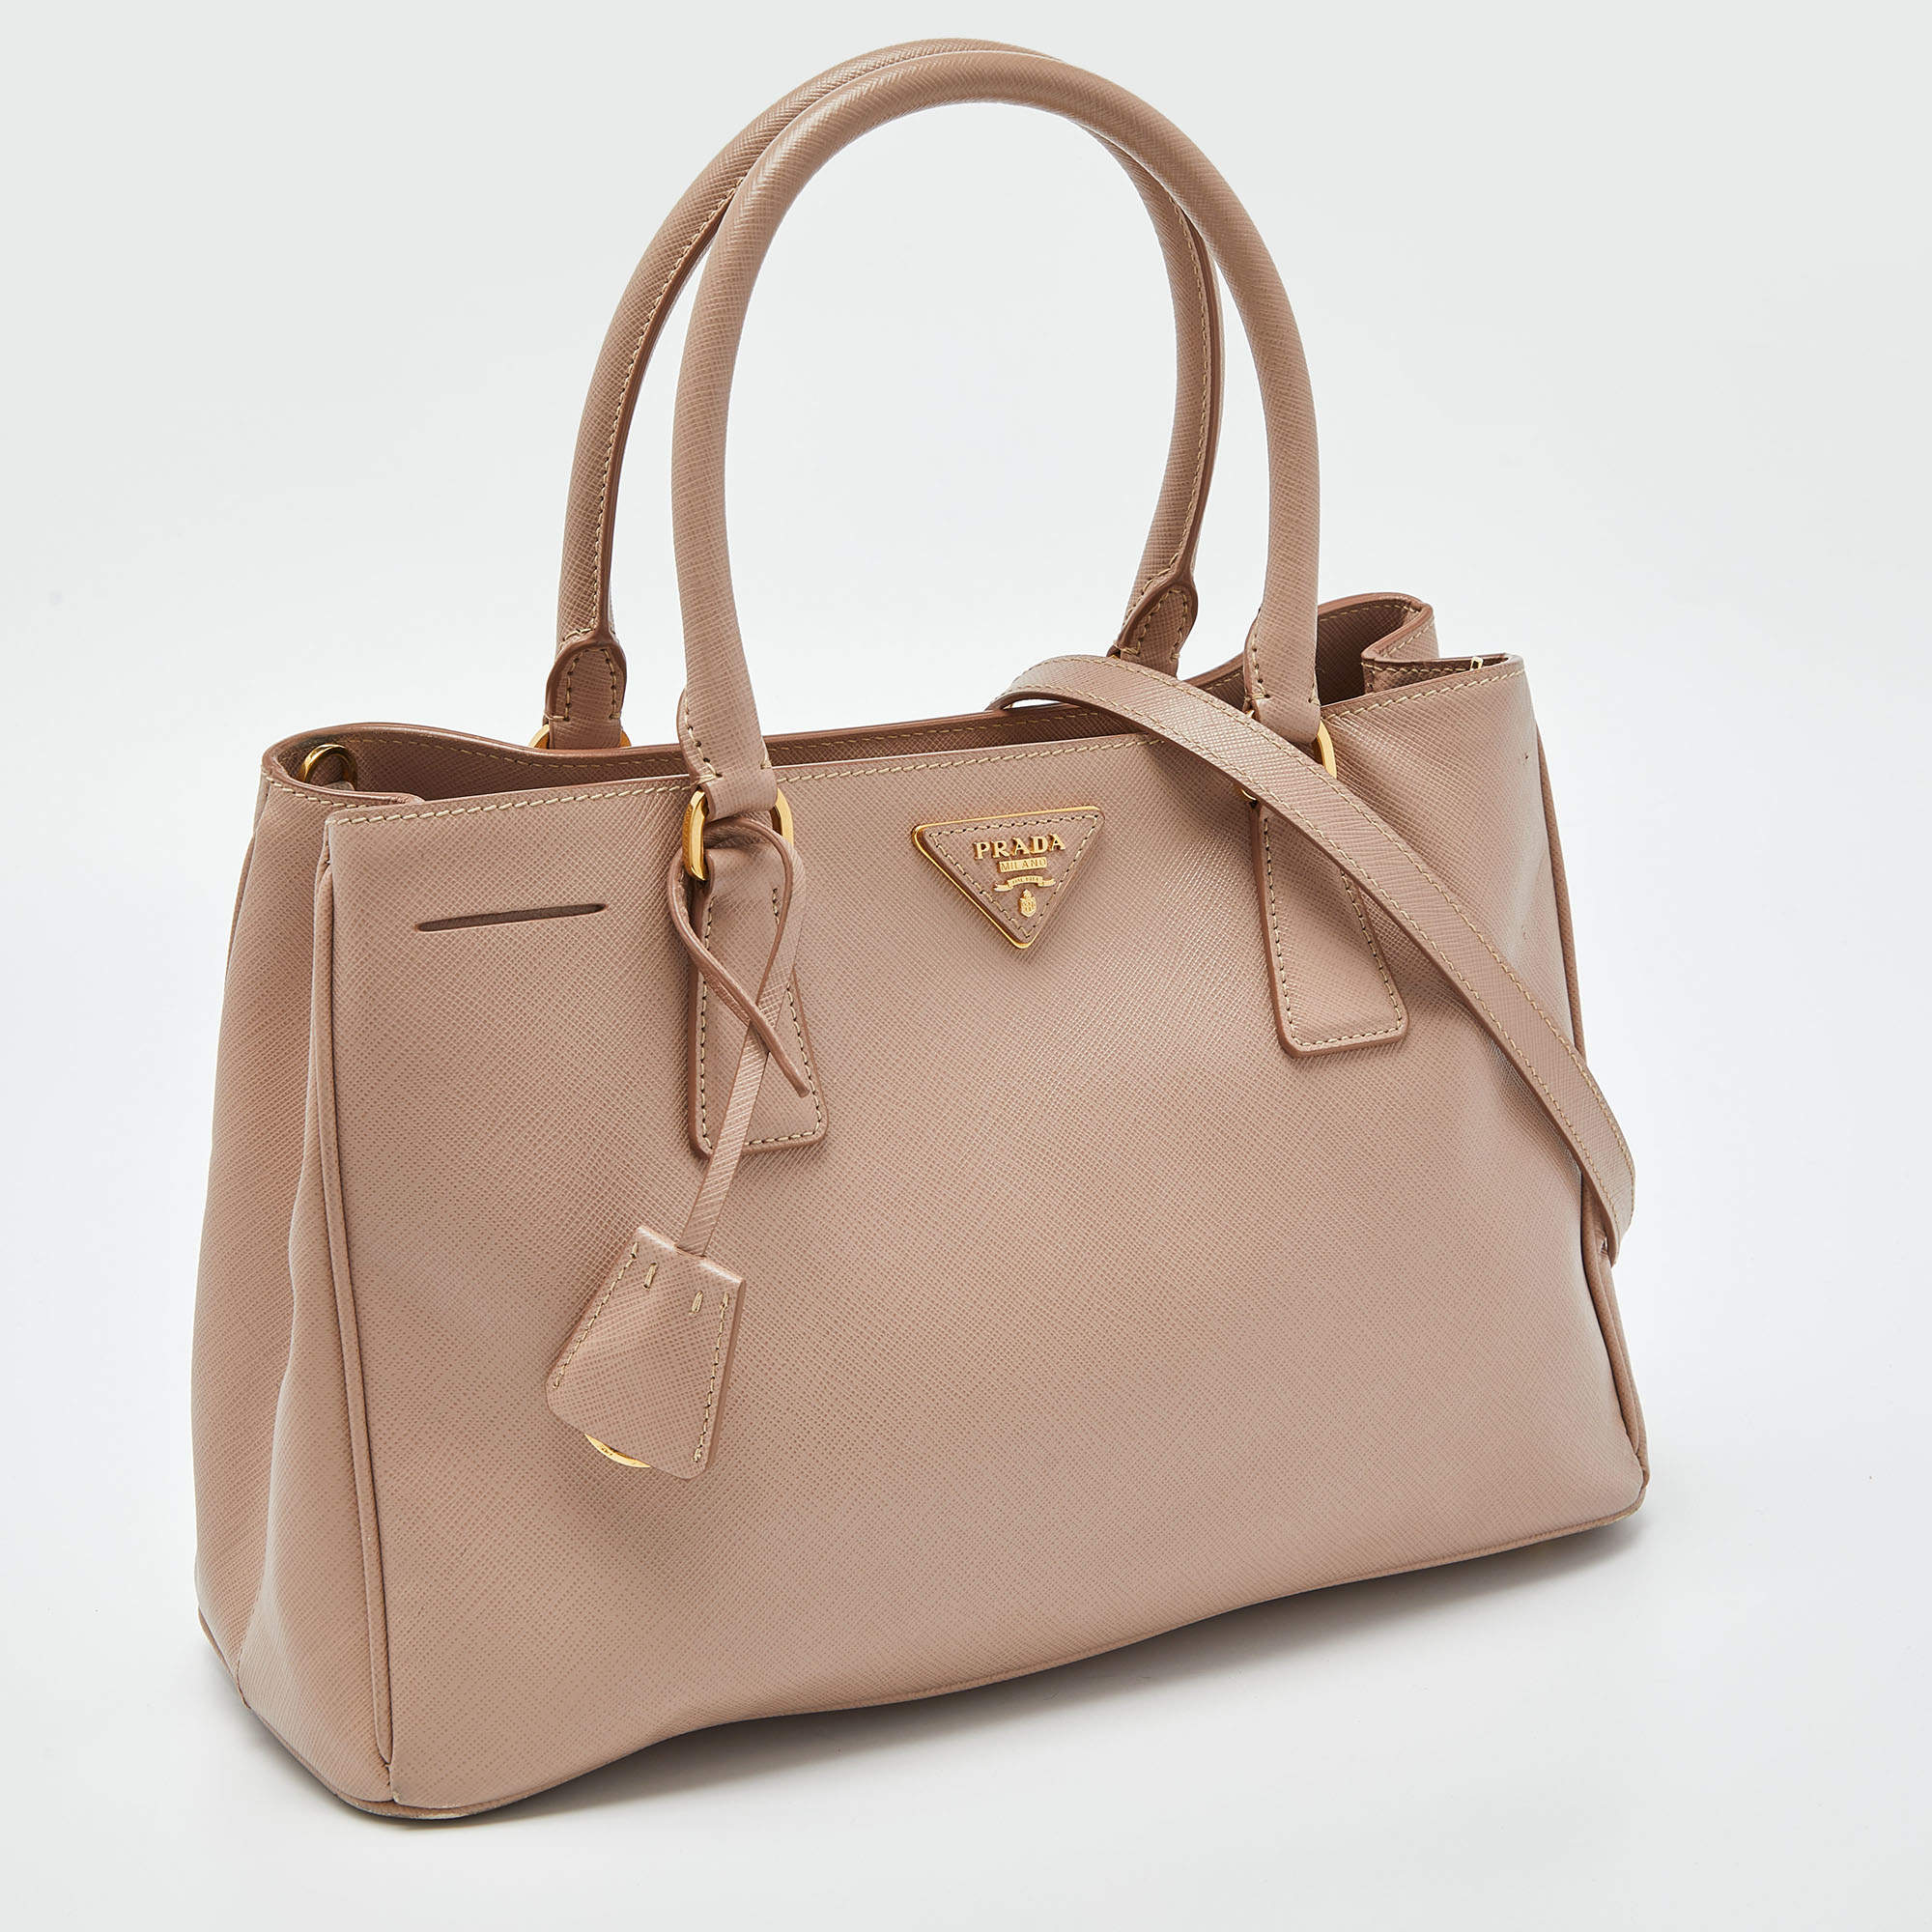 Prada Saffiano Lux Double-Zip Tote Bag, Blush (Cammeo)